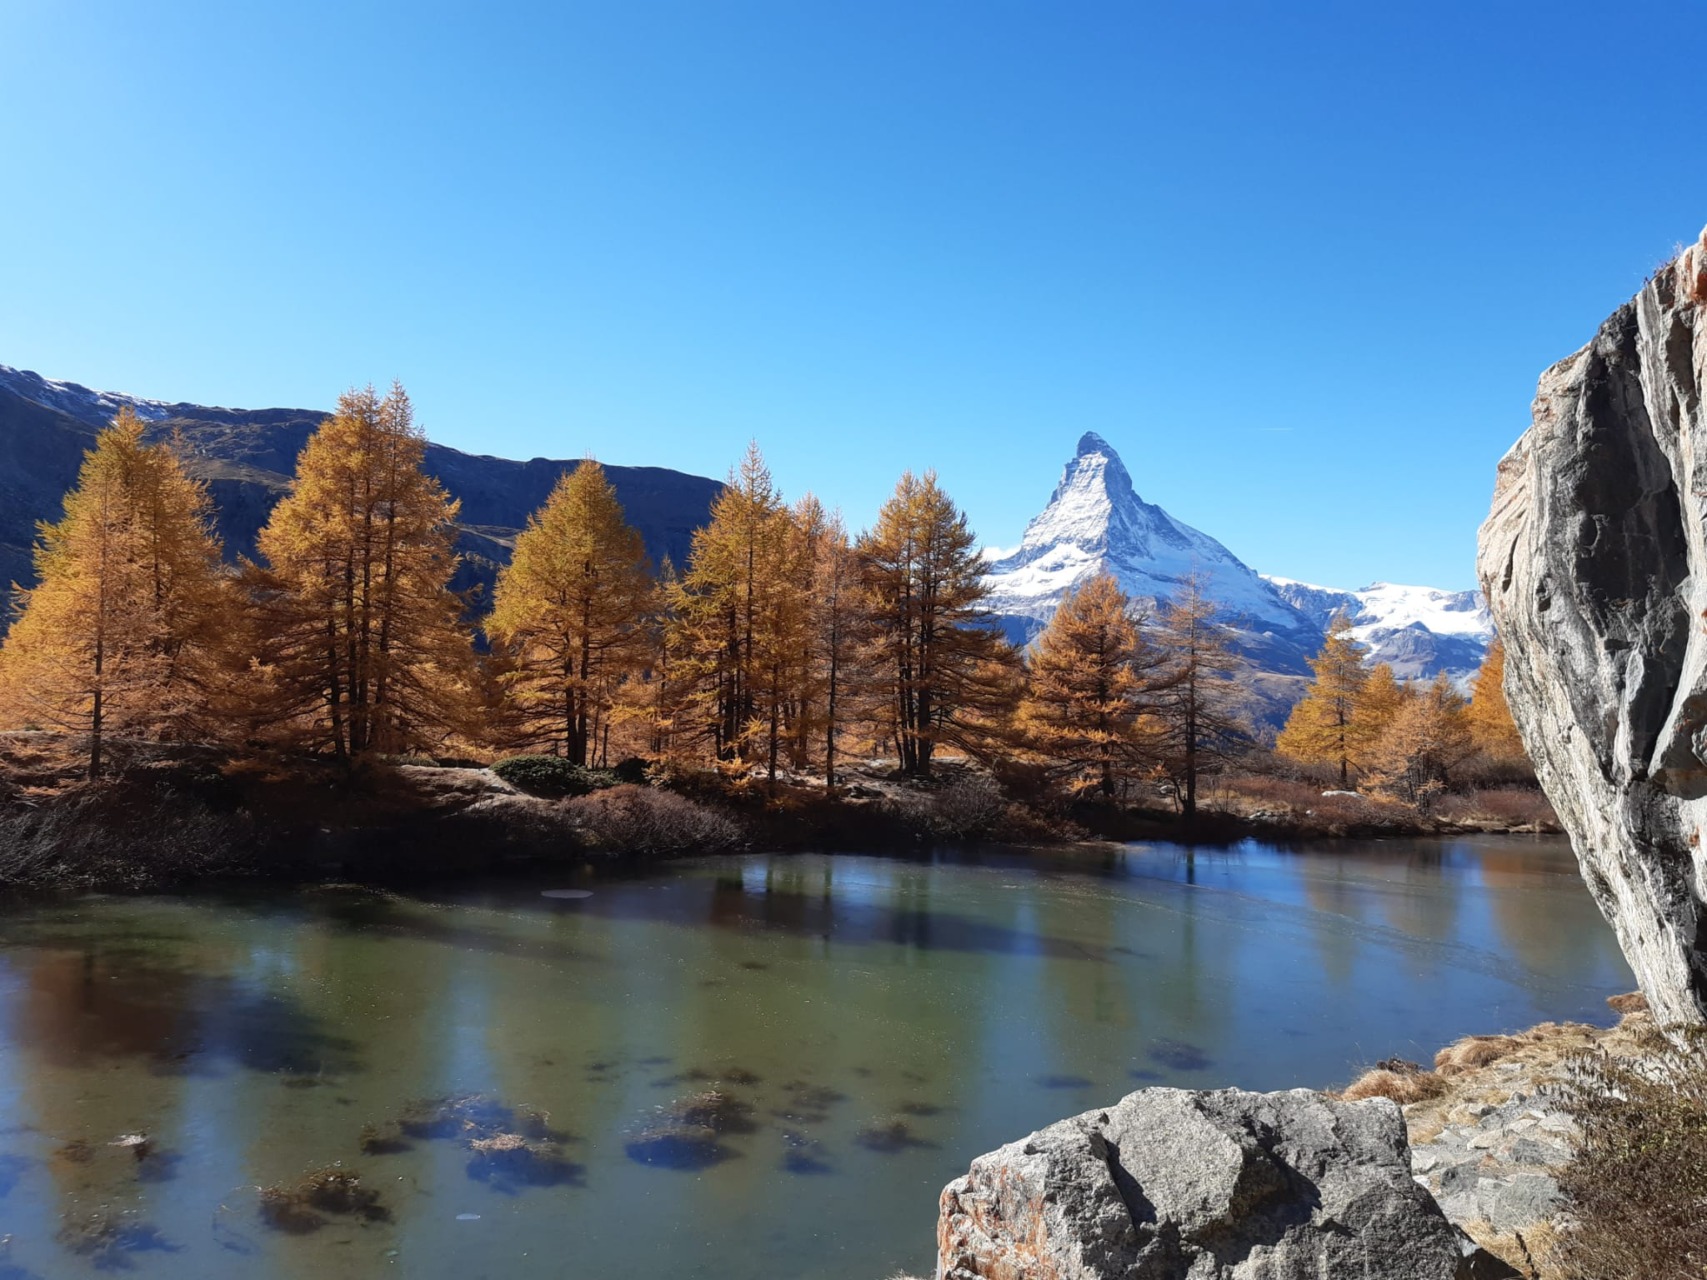 Alpen: Goldener Oktoberweer op komst